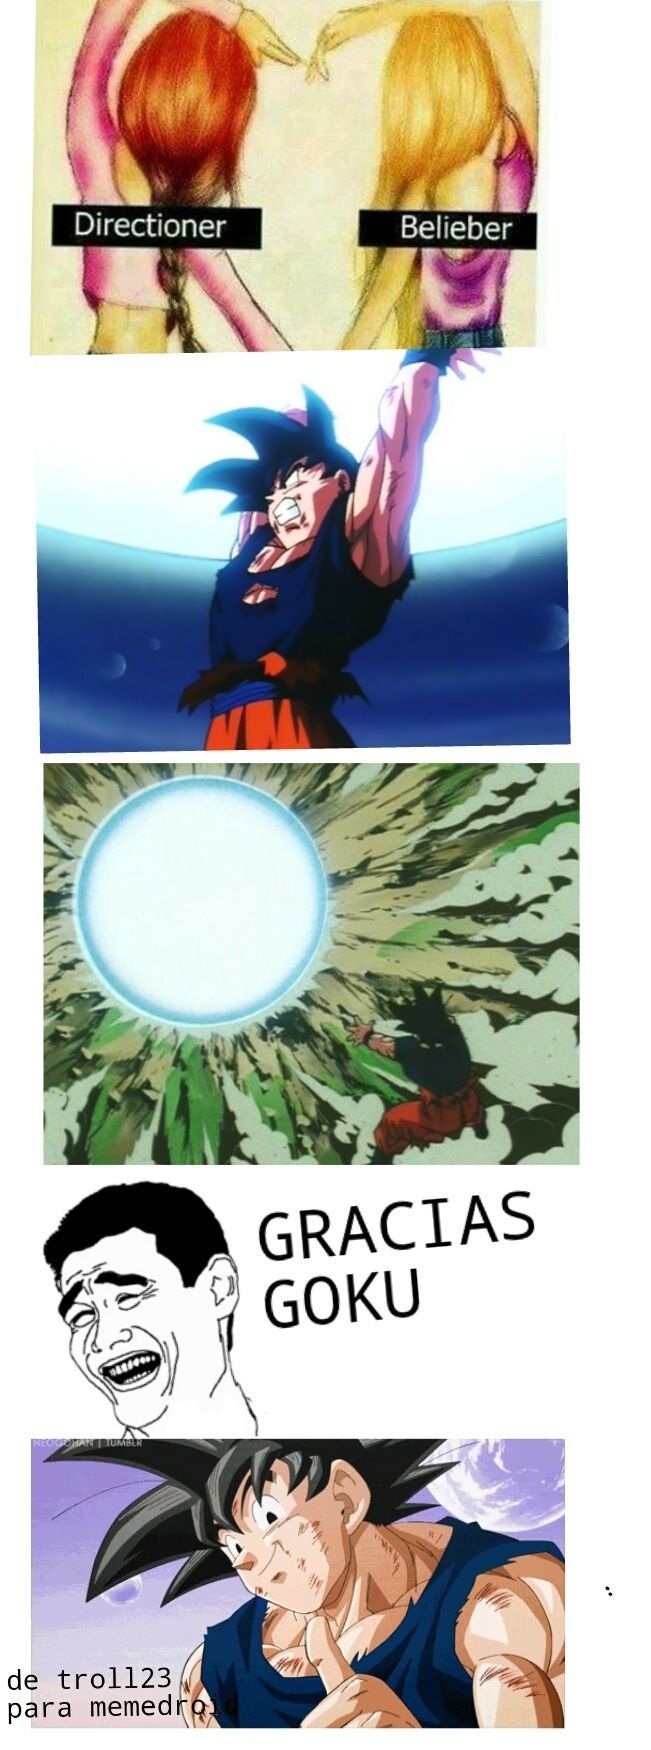 Y después preguntan por que Goku es mi héroe :D  - meme